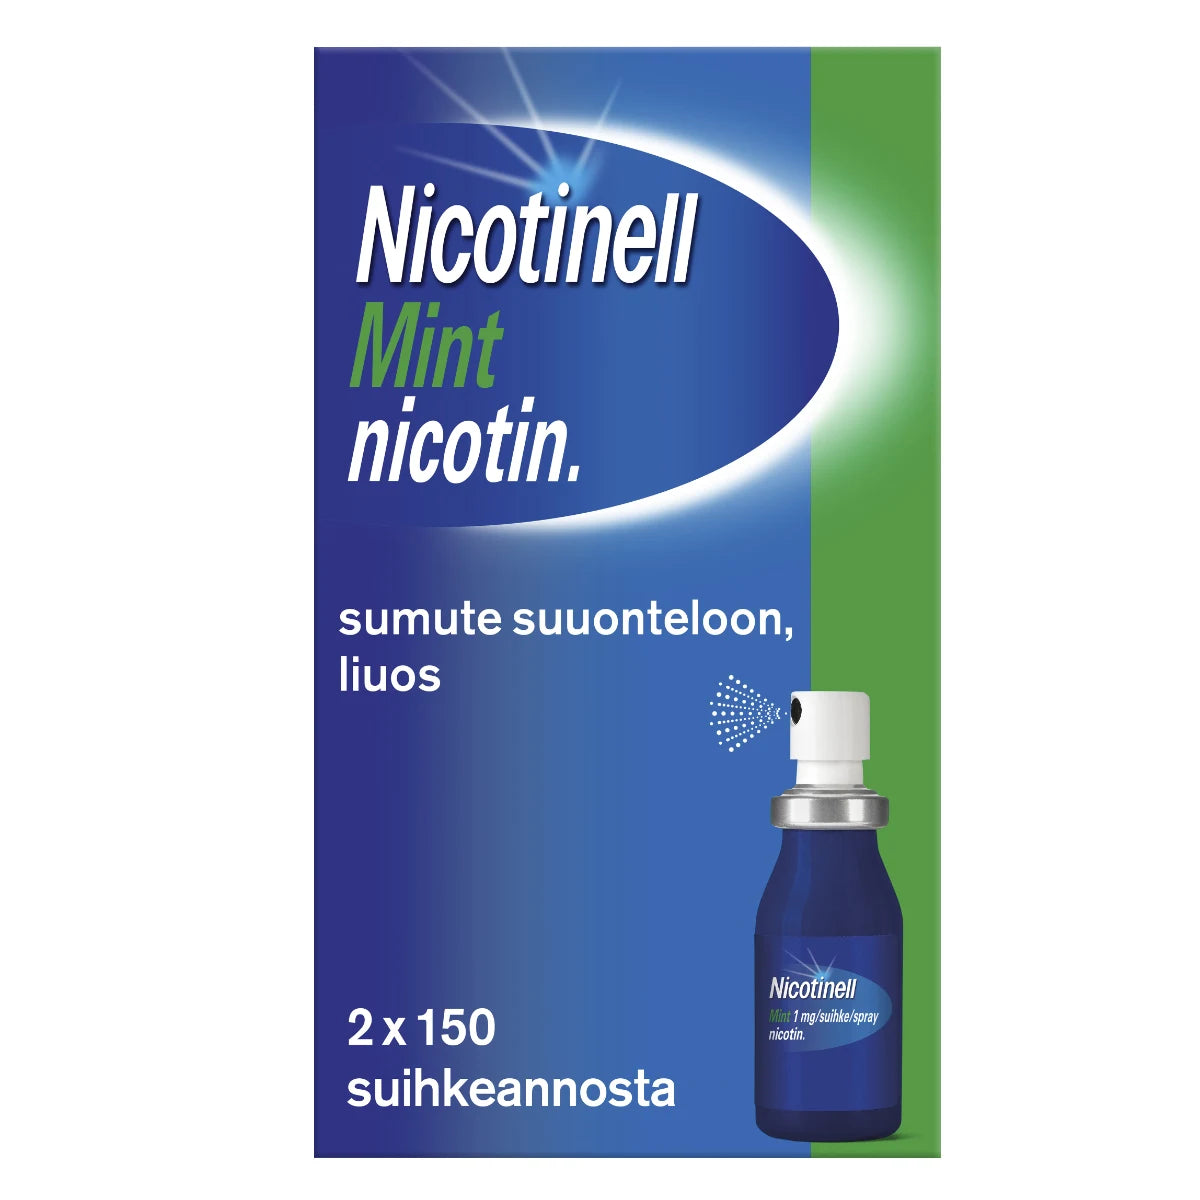 NICOTINELL MINT sumute suuonteloon, liuos 1 mg/suihke 2x150 annosta tupakoinnin lopettamiseen